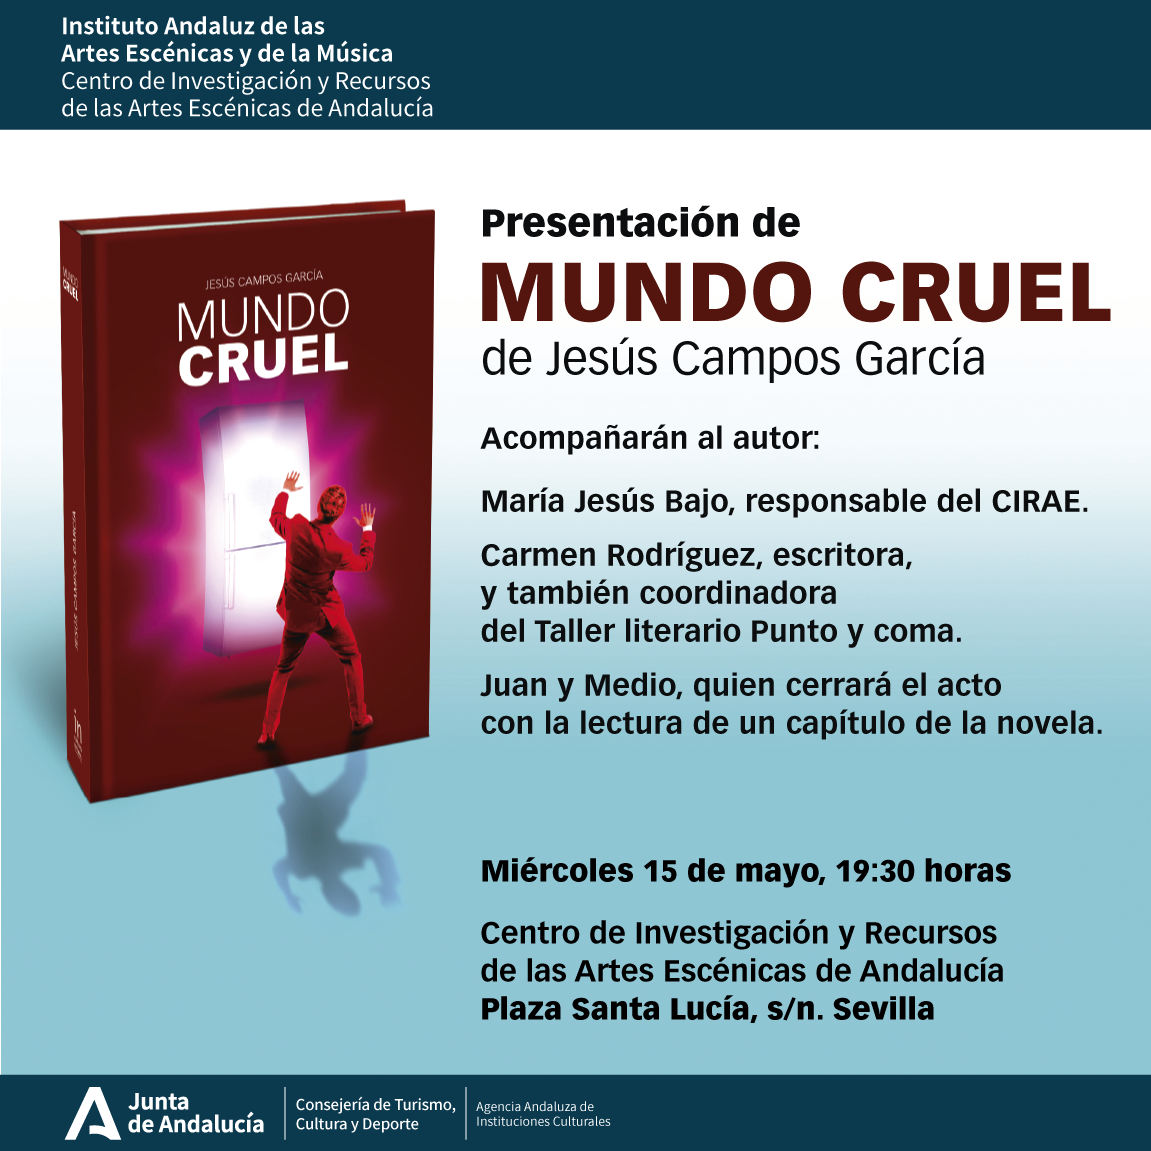 Presentación de “Mundo cruel” en Sevilla